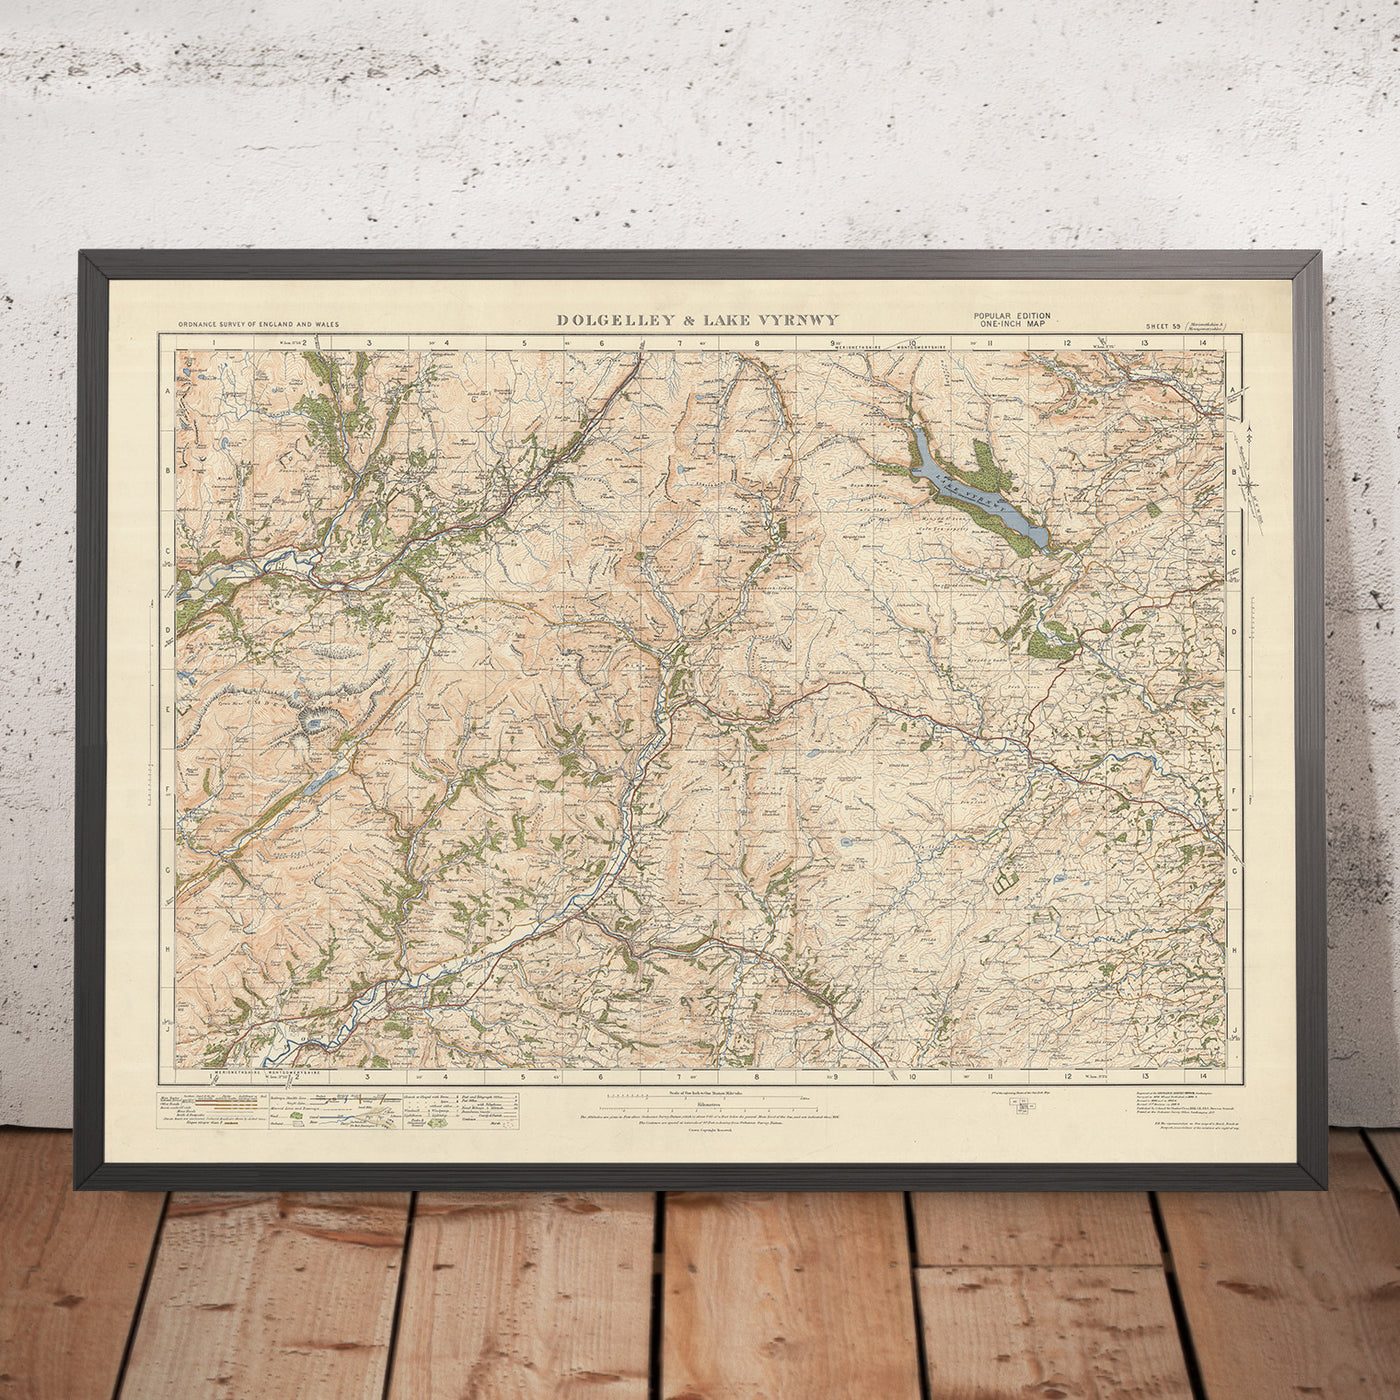 Carte Old Ordnance Survey, feuille 59 - Dolgelly et lac Vyrnwy, 1925 : Machynlleth, Corris, Aberangell, parc forestier Coed y Brenin, parc national d'Eryri